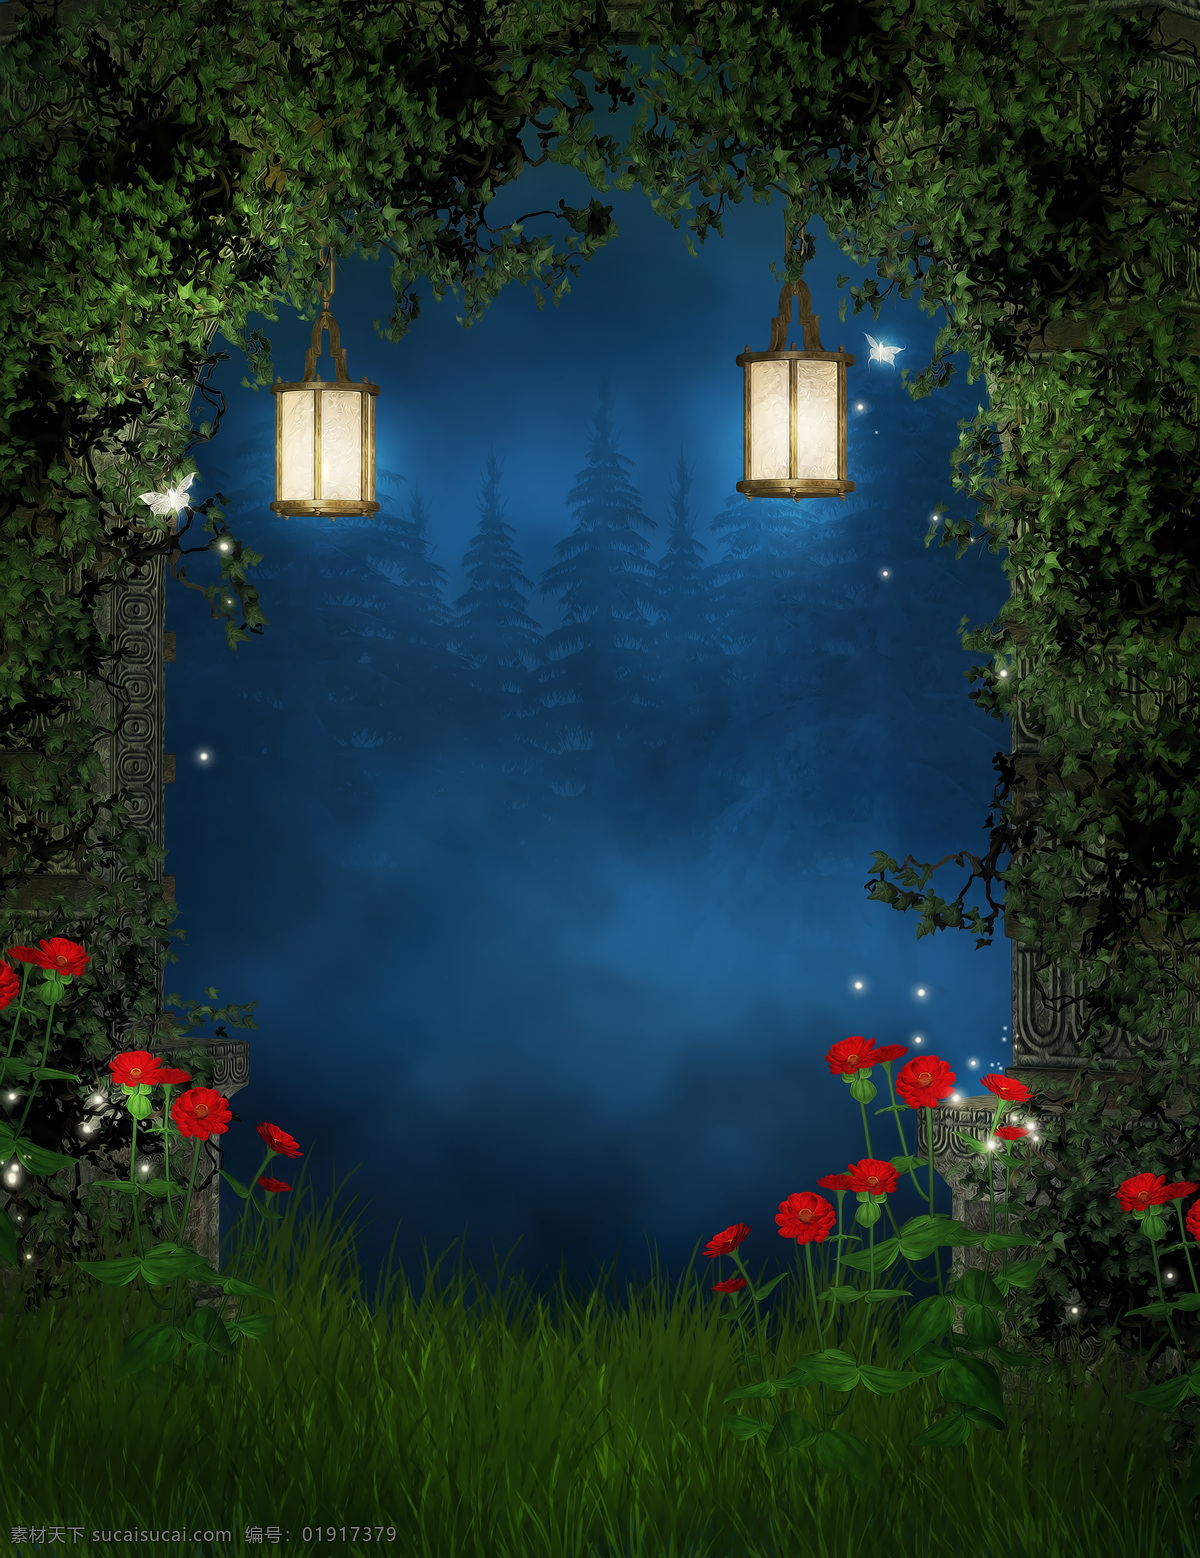 梦幻 自然 童话 唯美 大自然 草地 朦胧 夜空 鲜花 路灯 山水风景 风景图片